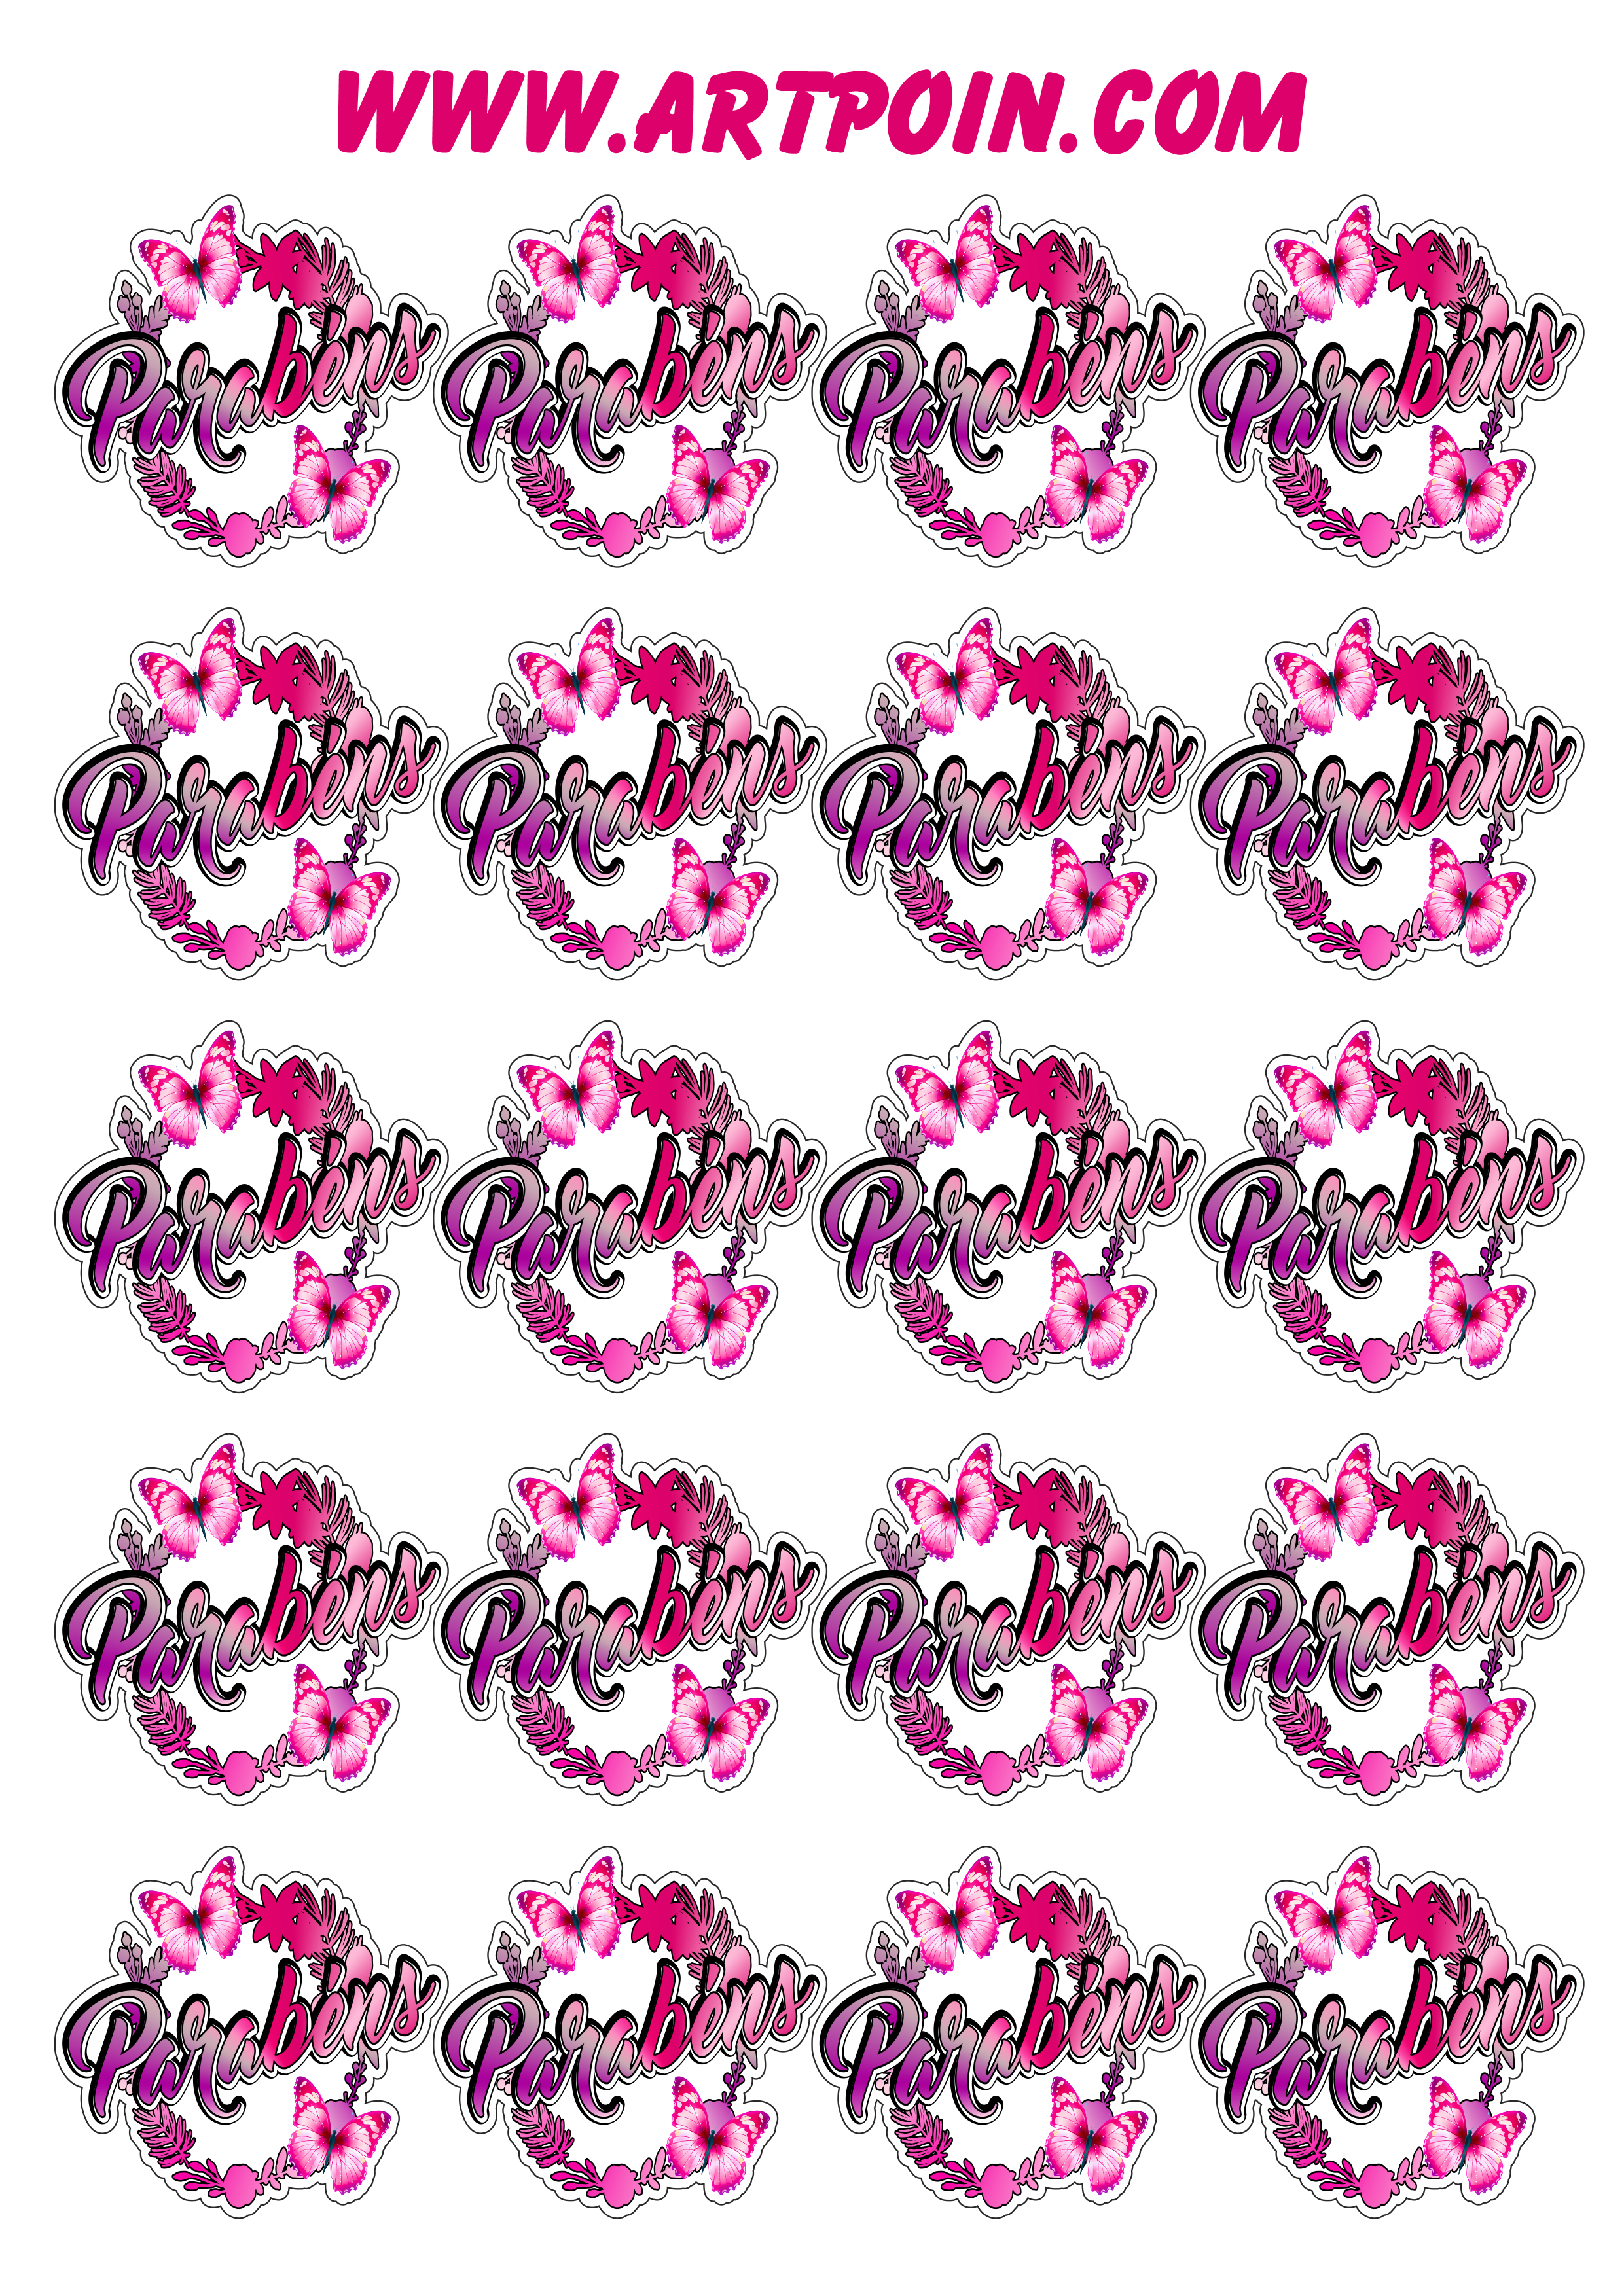 Borboleta colorida adesivos tags stickers com flores aniversário decorado parabéns artes gráficas 20 imagens png